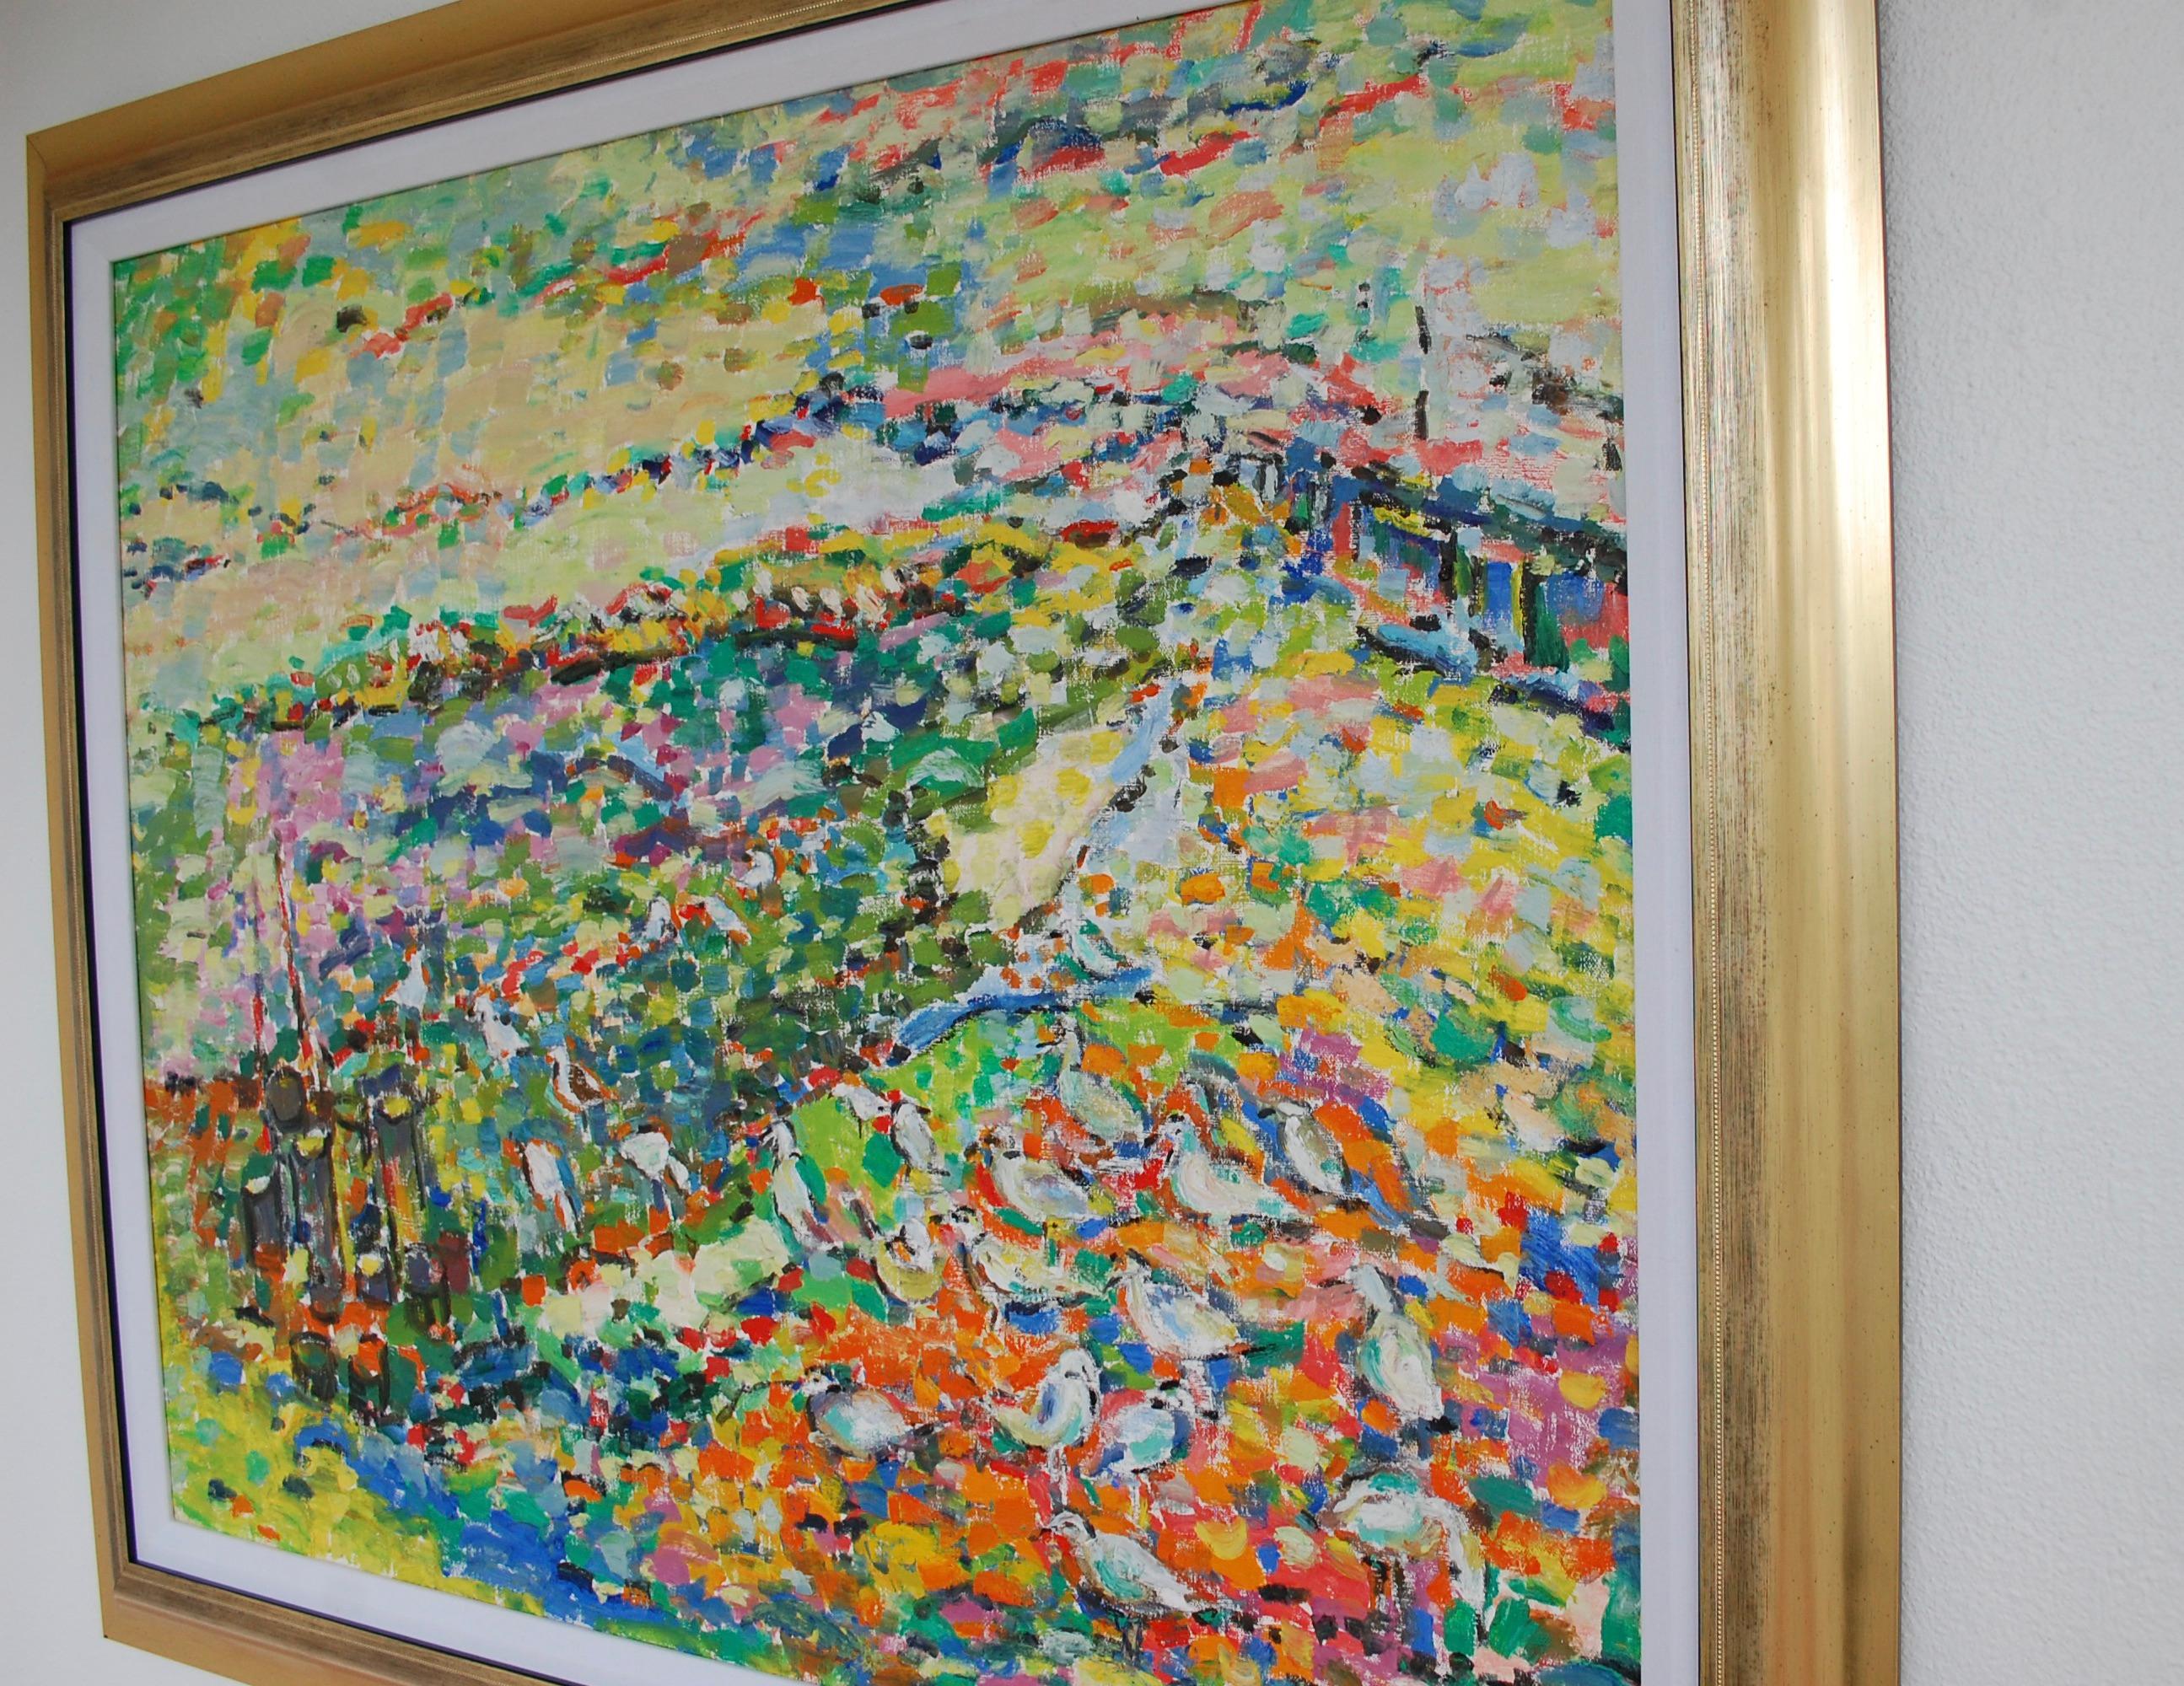 Mouettes sur le rivage 
Impressionniste abstrait vibrant.
Marquage de l'artiste en bas à droite.
Judith Sobel est née à Lwow, en Pologne, en 1924. Après la Seconde Guerre mondiale, elle a fréquenté l'Académie des Beaux-Arts de Lodz, en Pologne. Elle